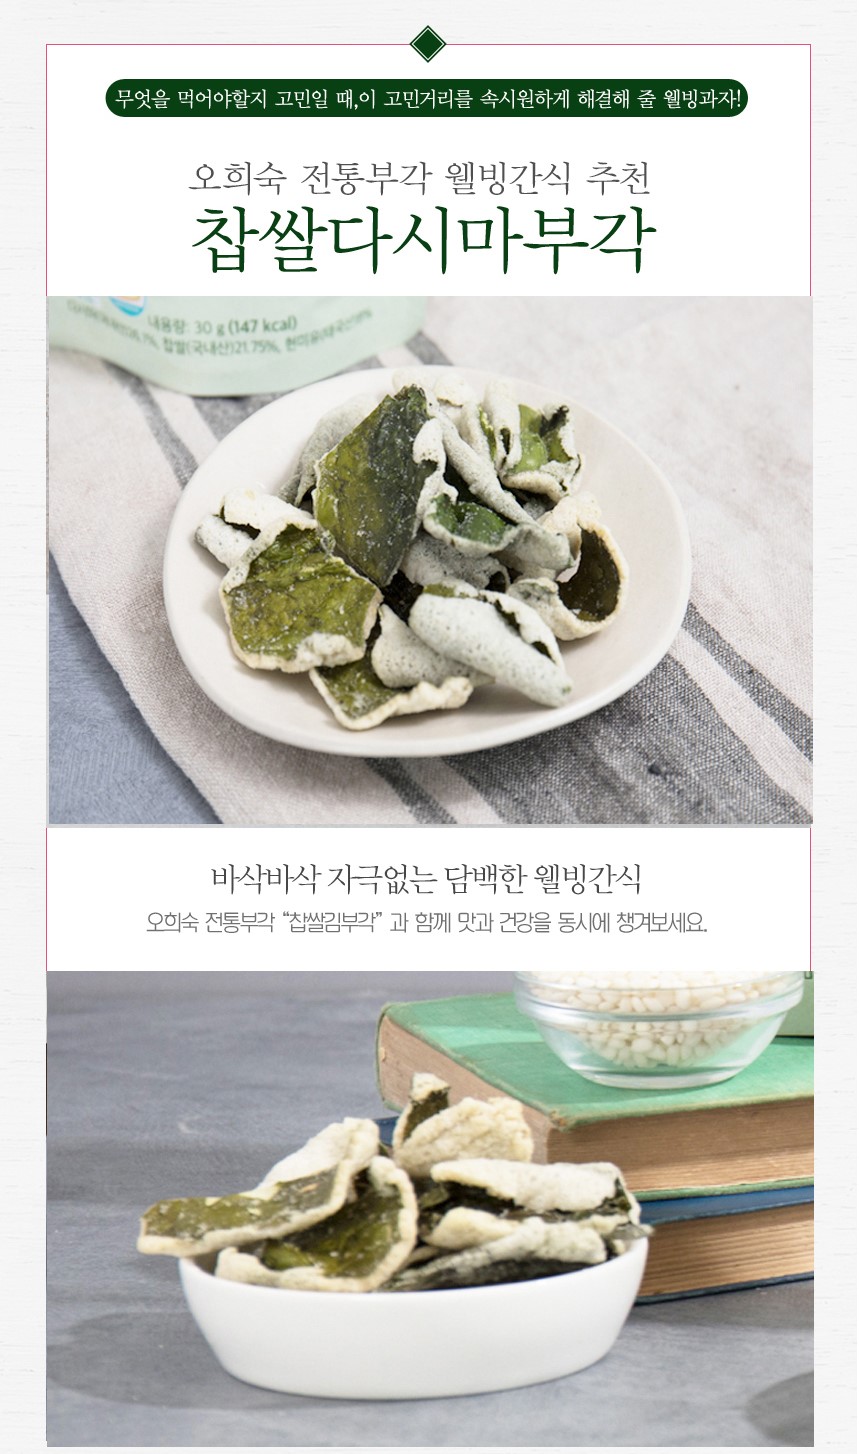 韓國食品-[OHS] Sea Tangle Crisps 30g